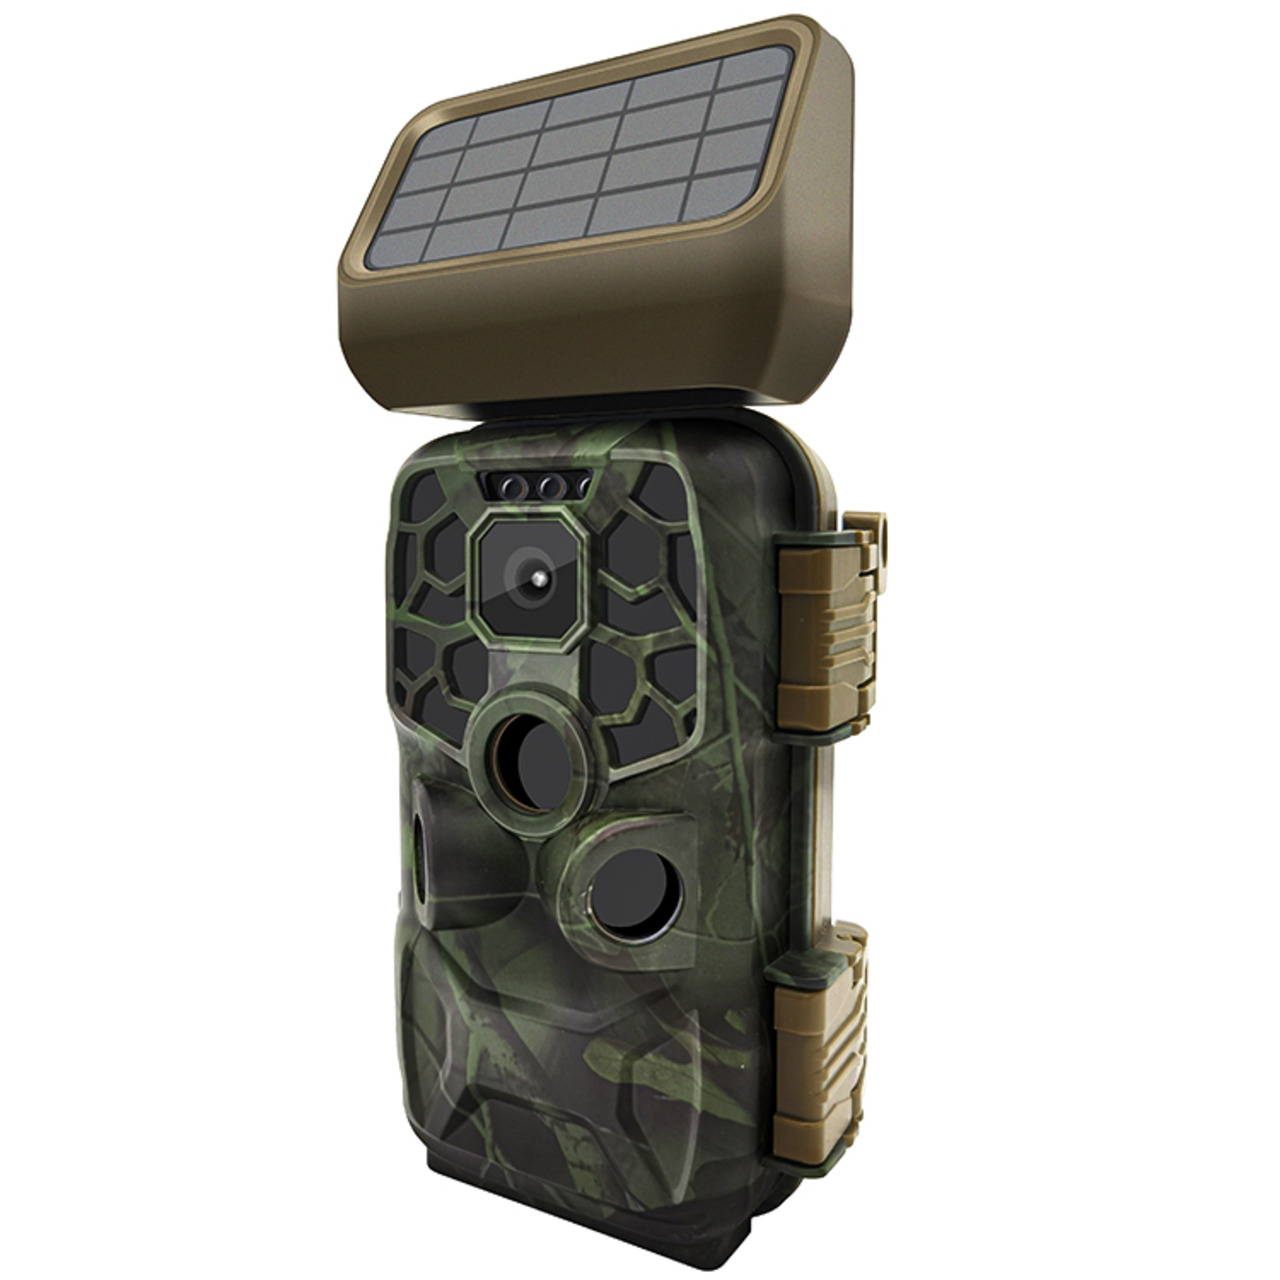 Braun Solar Fotofalle - Wildkamera Scouting Cam BLACK400 WiFi- 24 MP- IP56- Auslösezeit 0-4s  unter Sicherheitstechnik